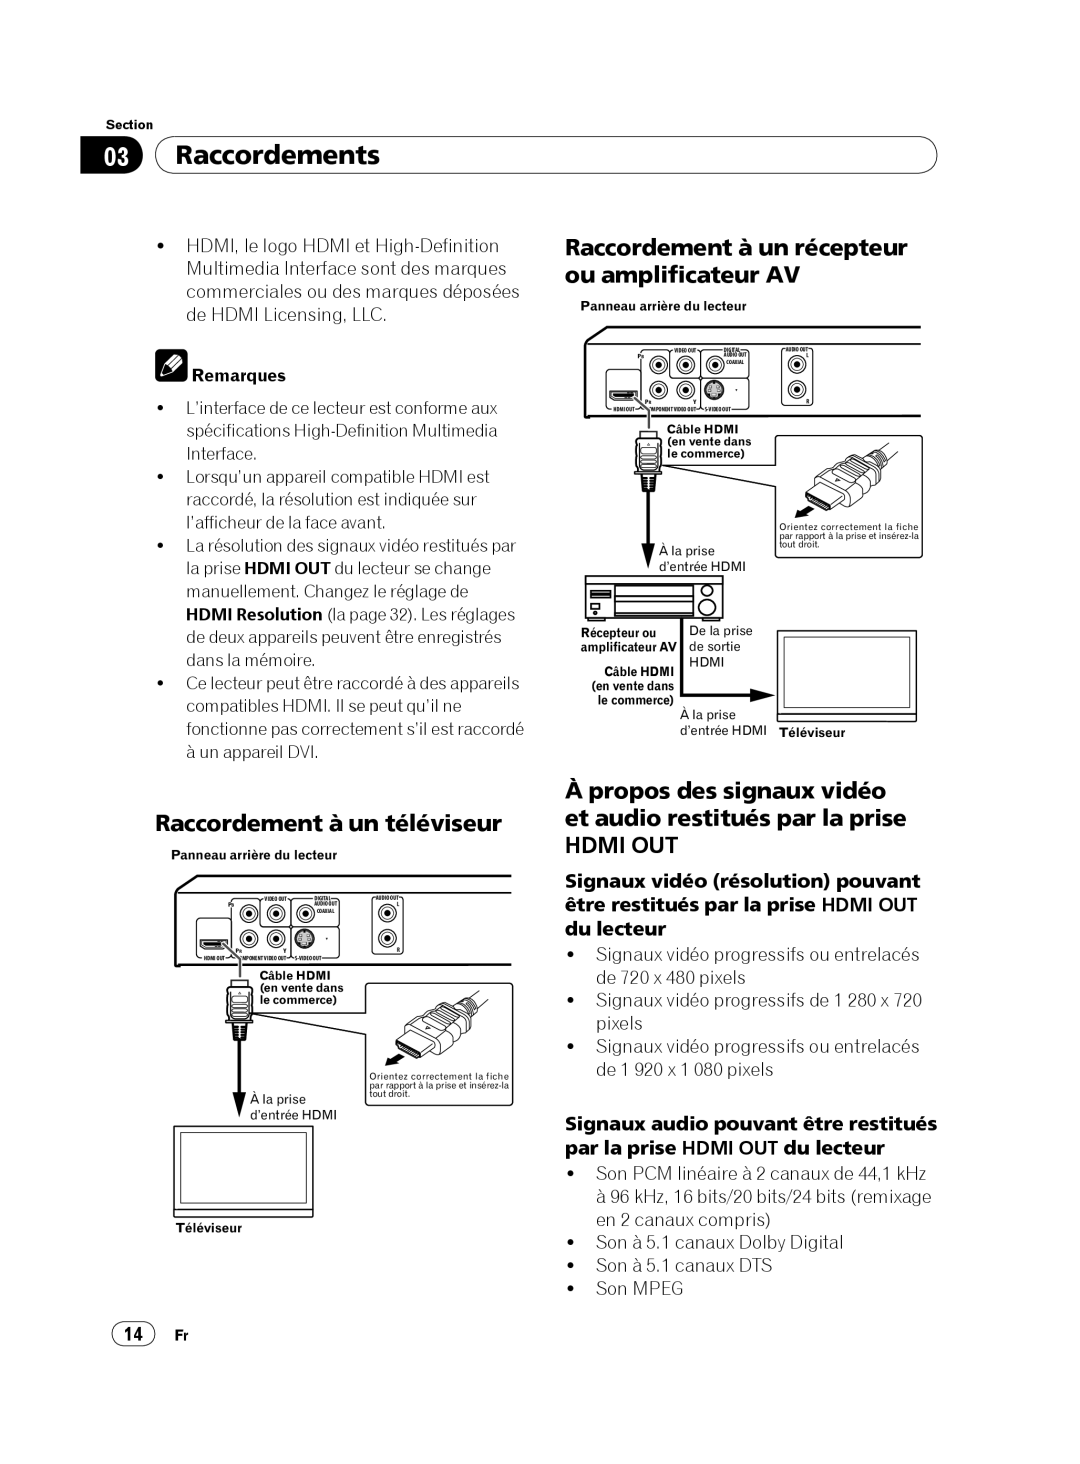 Pioneer DVP 420K Raccordements, Raccordement à un récepteur ou amplificateur AV, Raccordement à un téléviseur, Remarques 